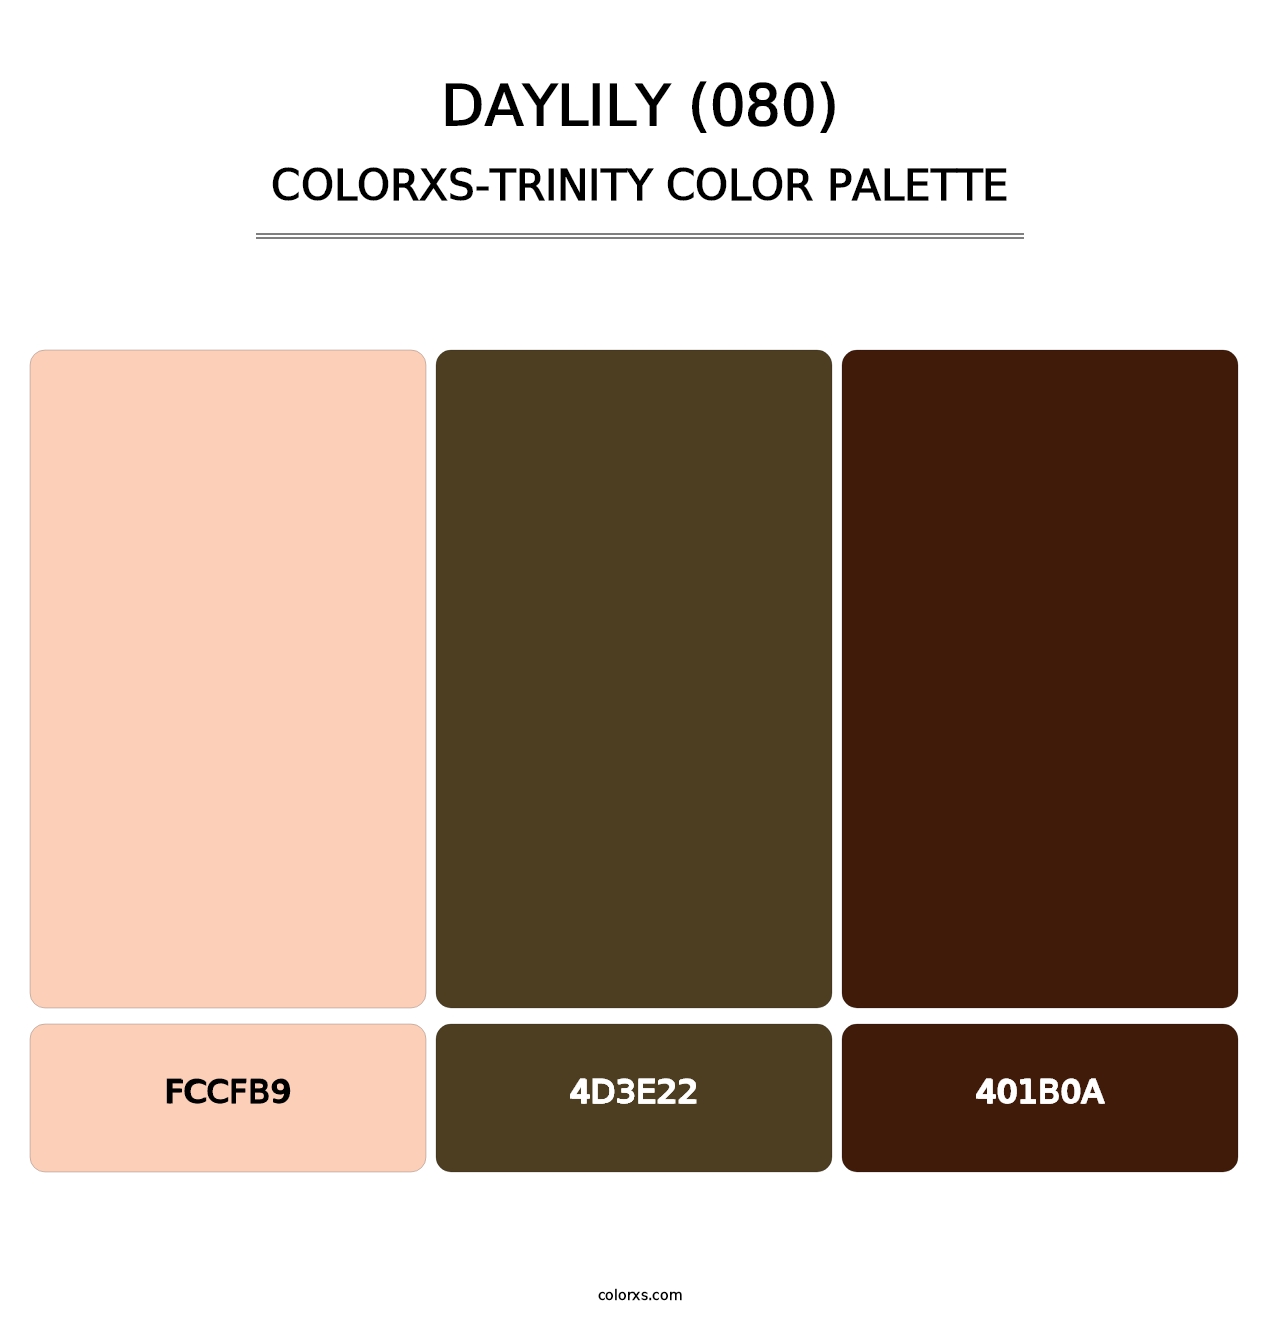 Daylily (080) - Colorxs Trinity Palette